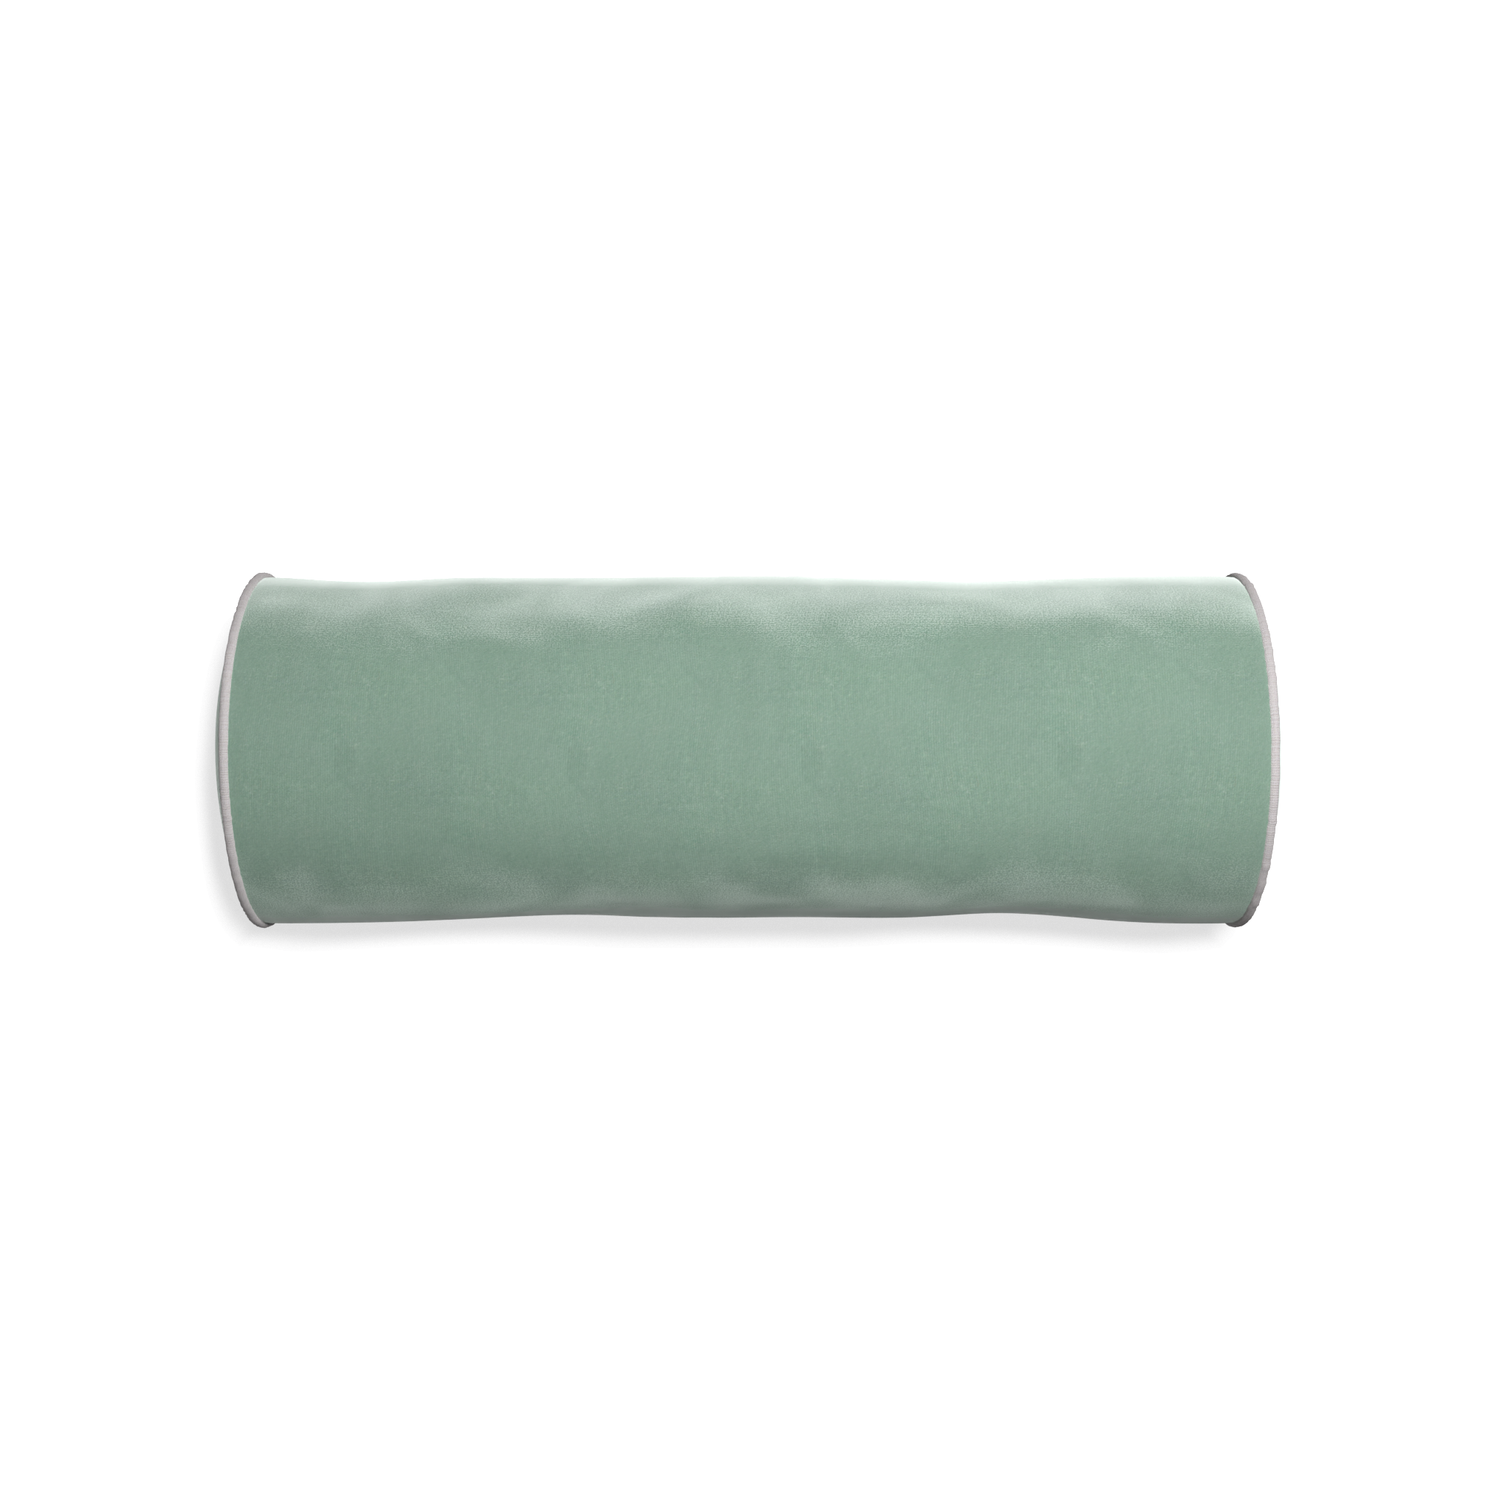 bolster blue green velvet pillow with gray piping